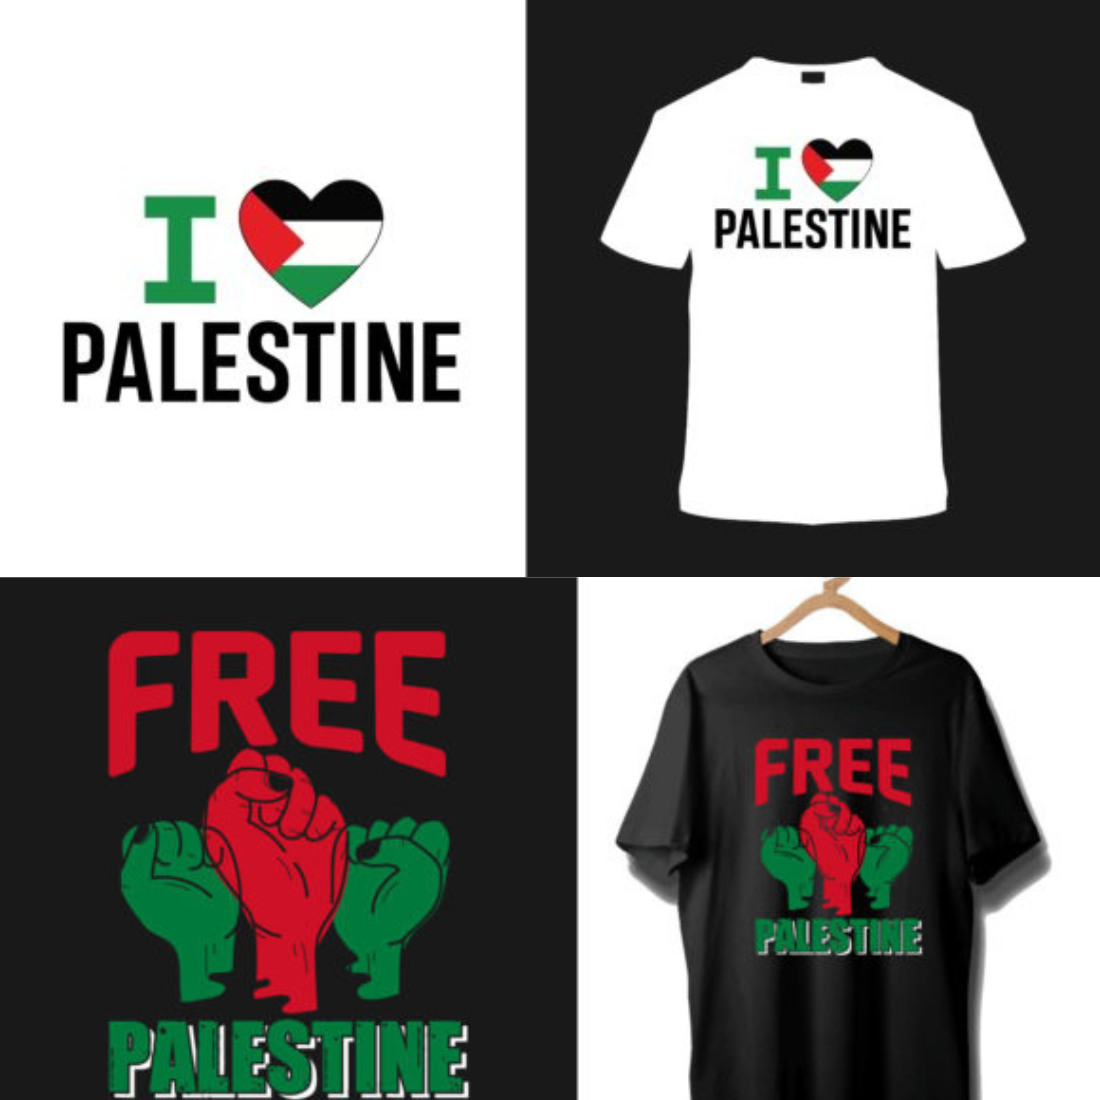 Free Gaza Free Palestine T-shirt bundle preview image.